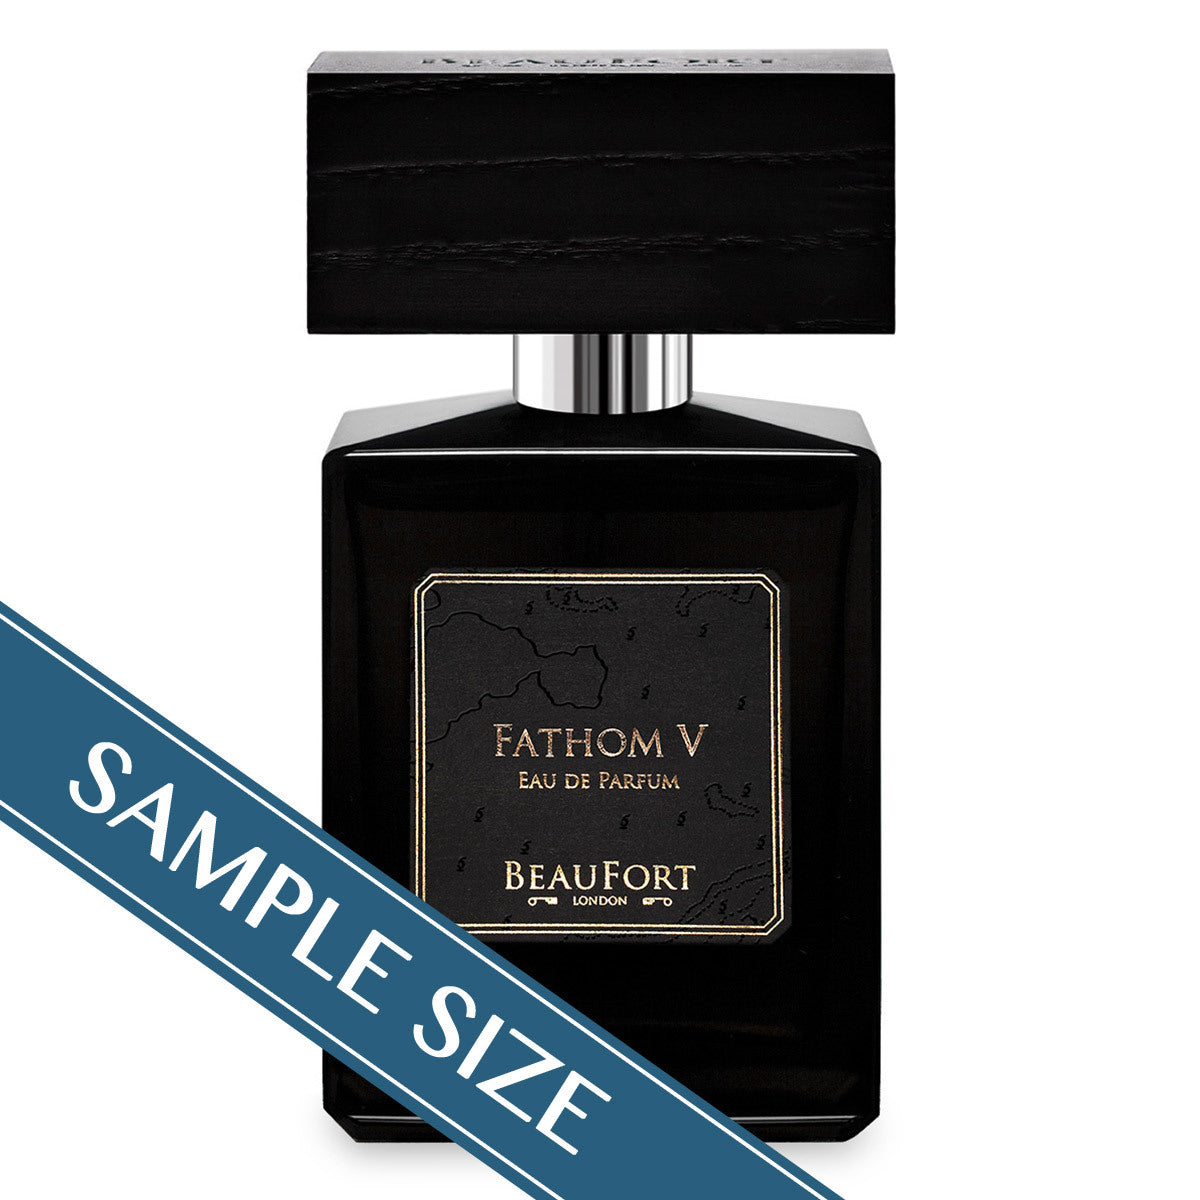 Primary image of Sample - Fathom V Eau de Parfum